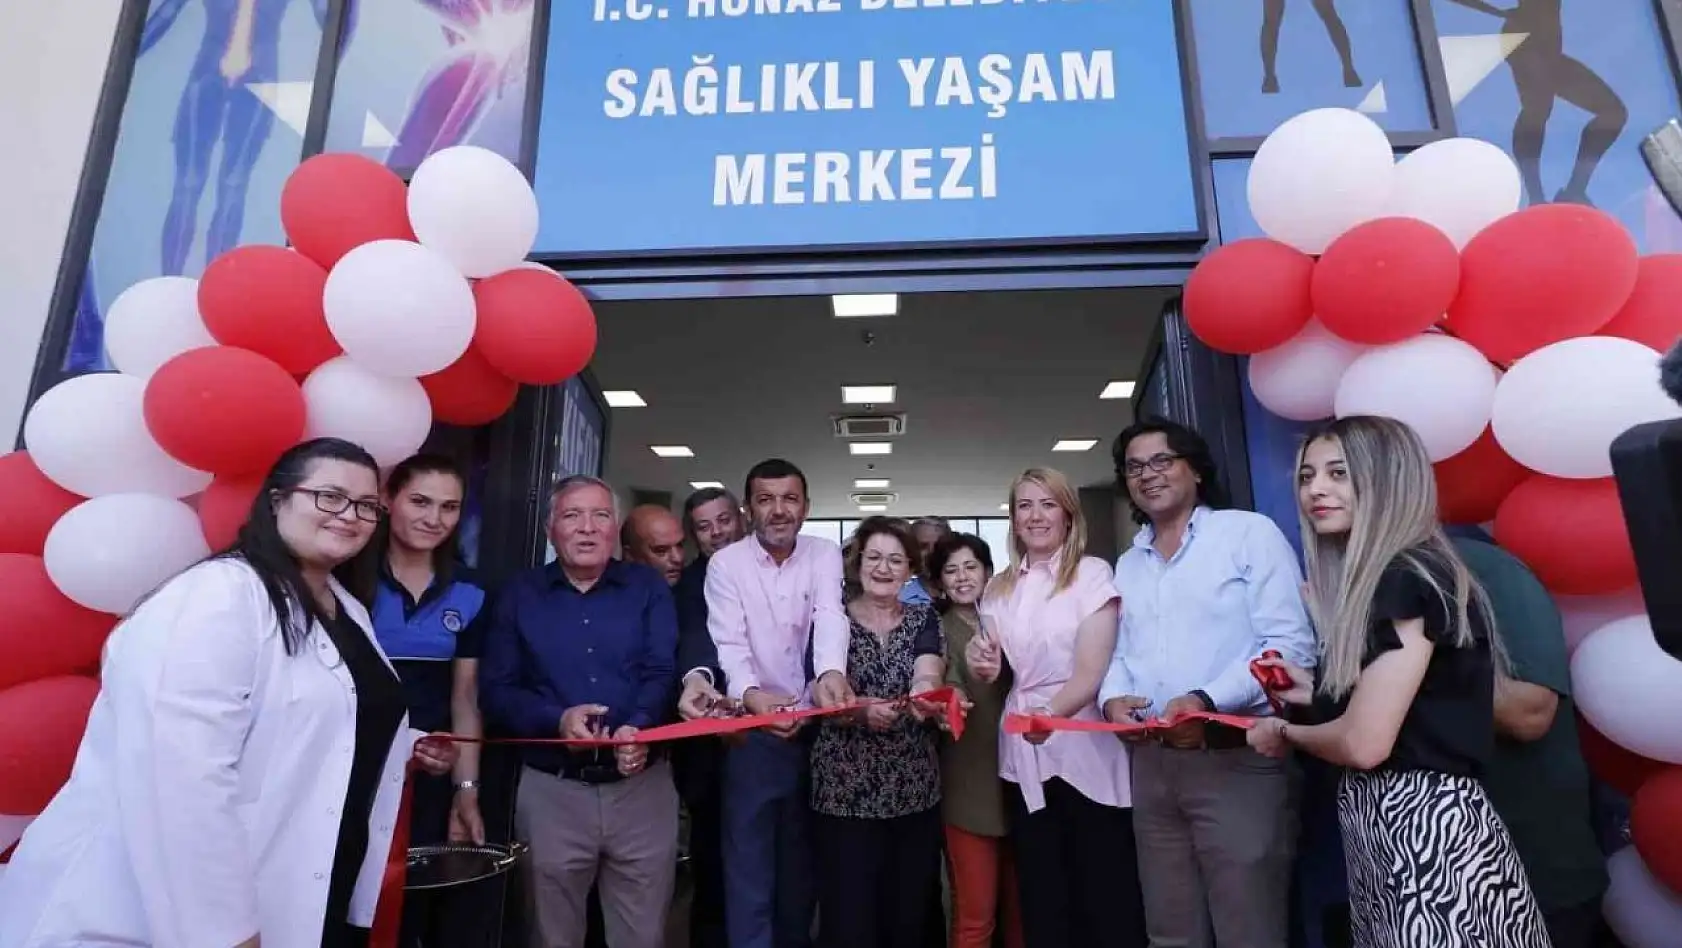 Honaz Sağlıklı Yaşam Merkezi tüm ilçe halkının hizmetine açıldı